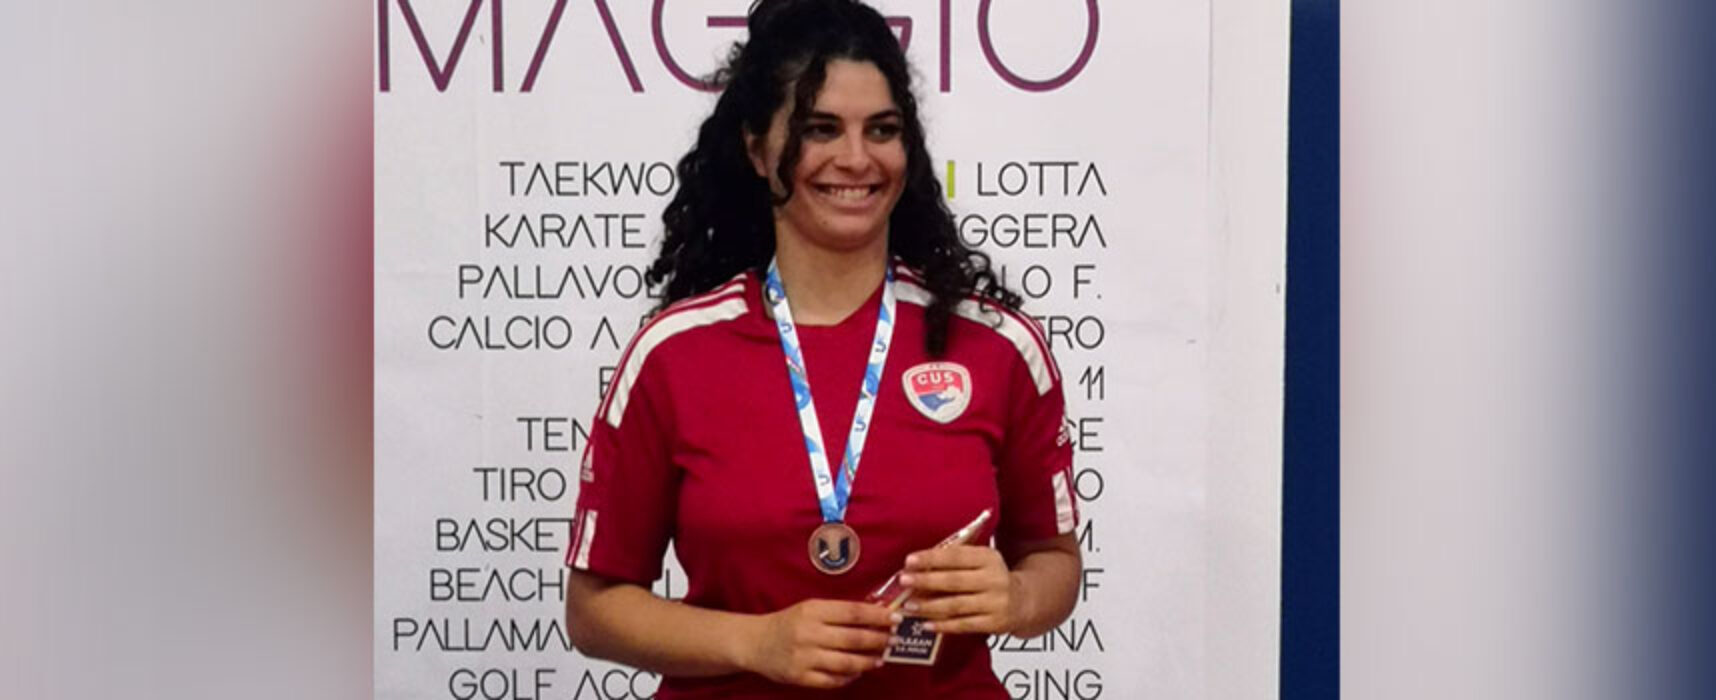 Lidia Strippoli conquista il bronzo al Campionato Universitario